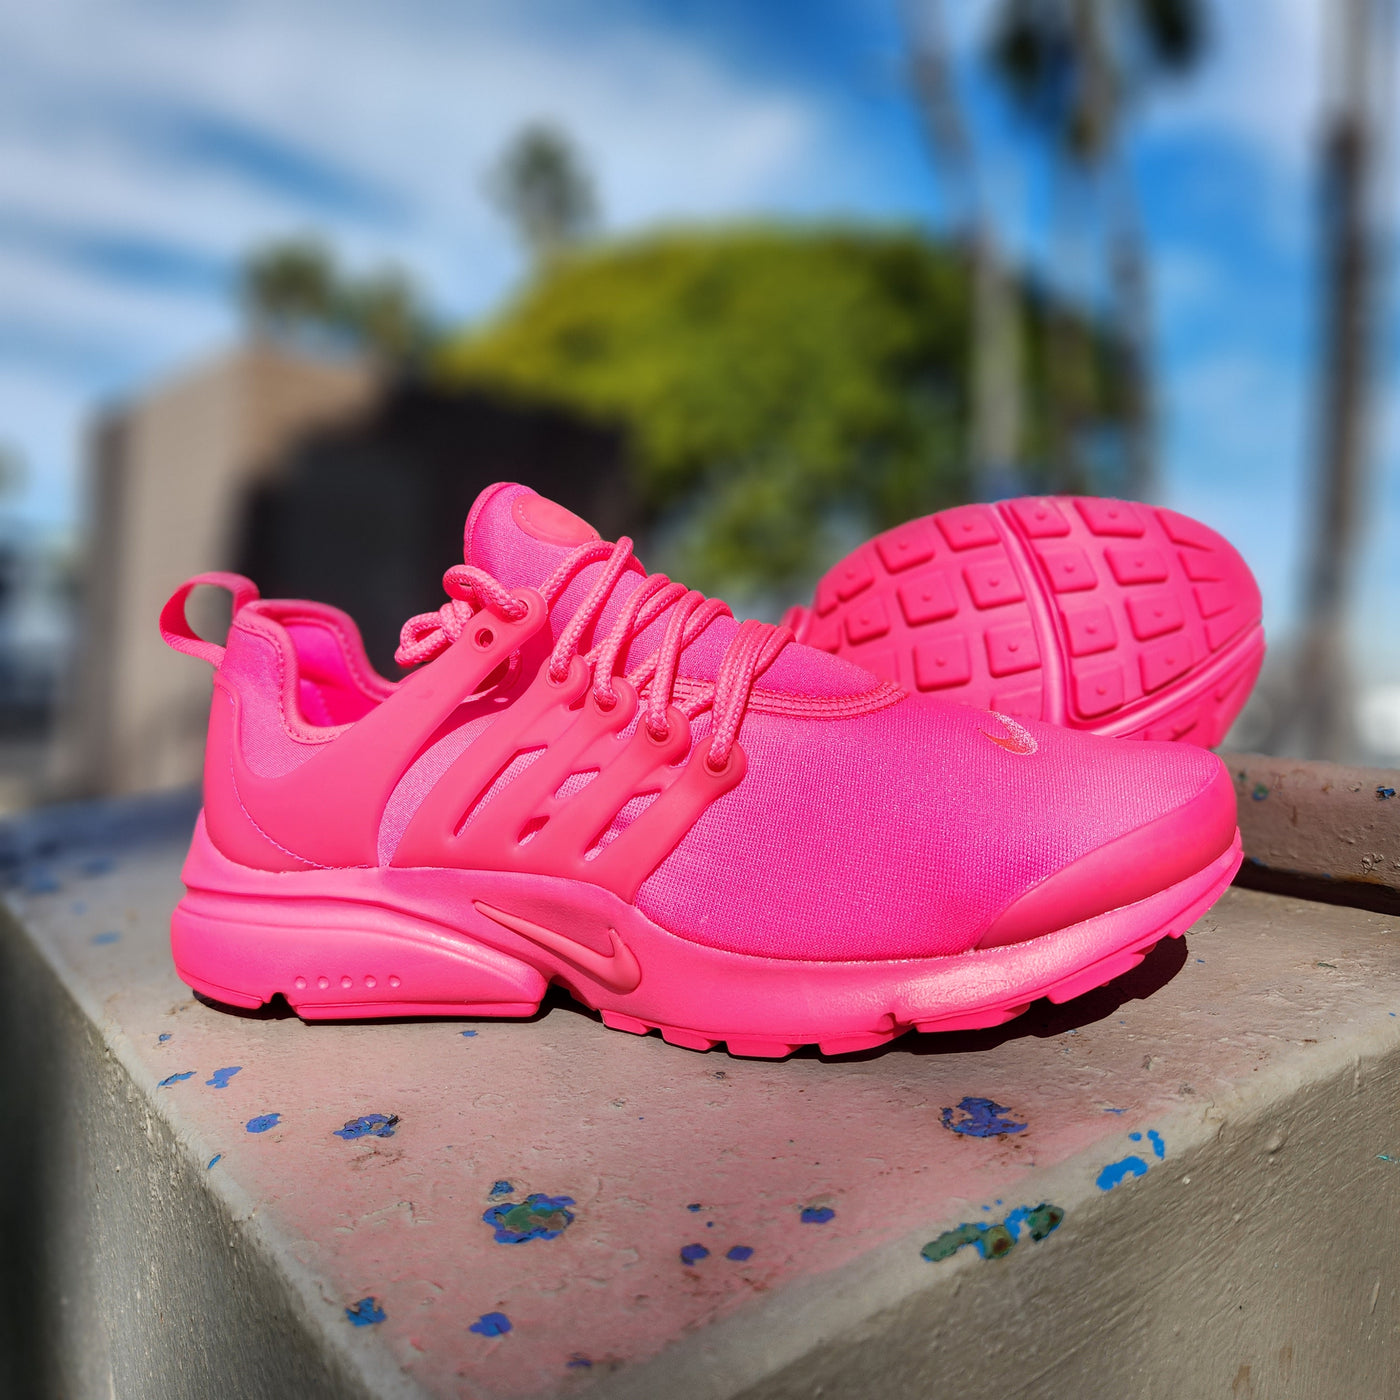 W Nike Air Presto Hyper Pink